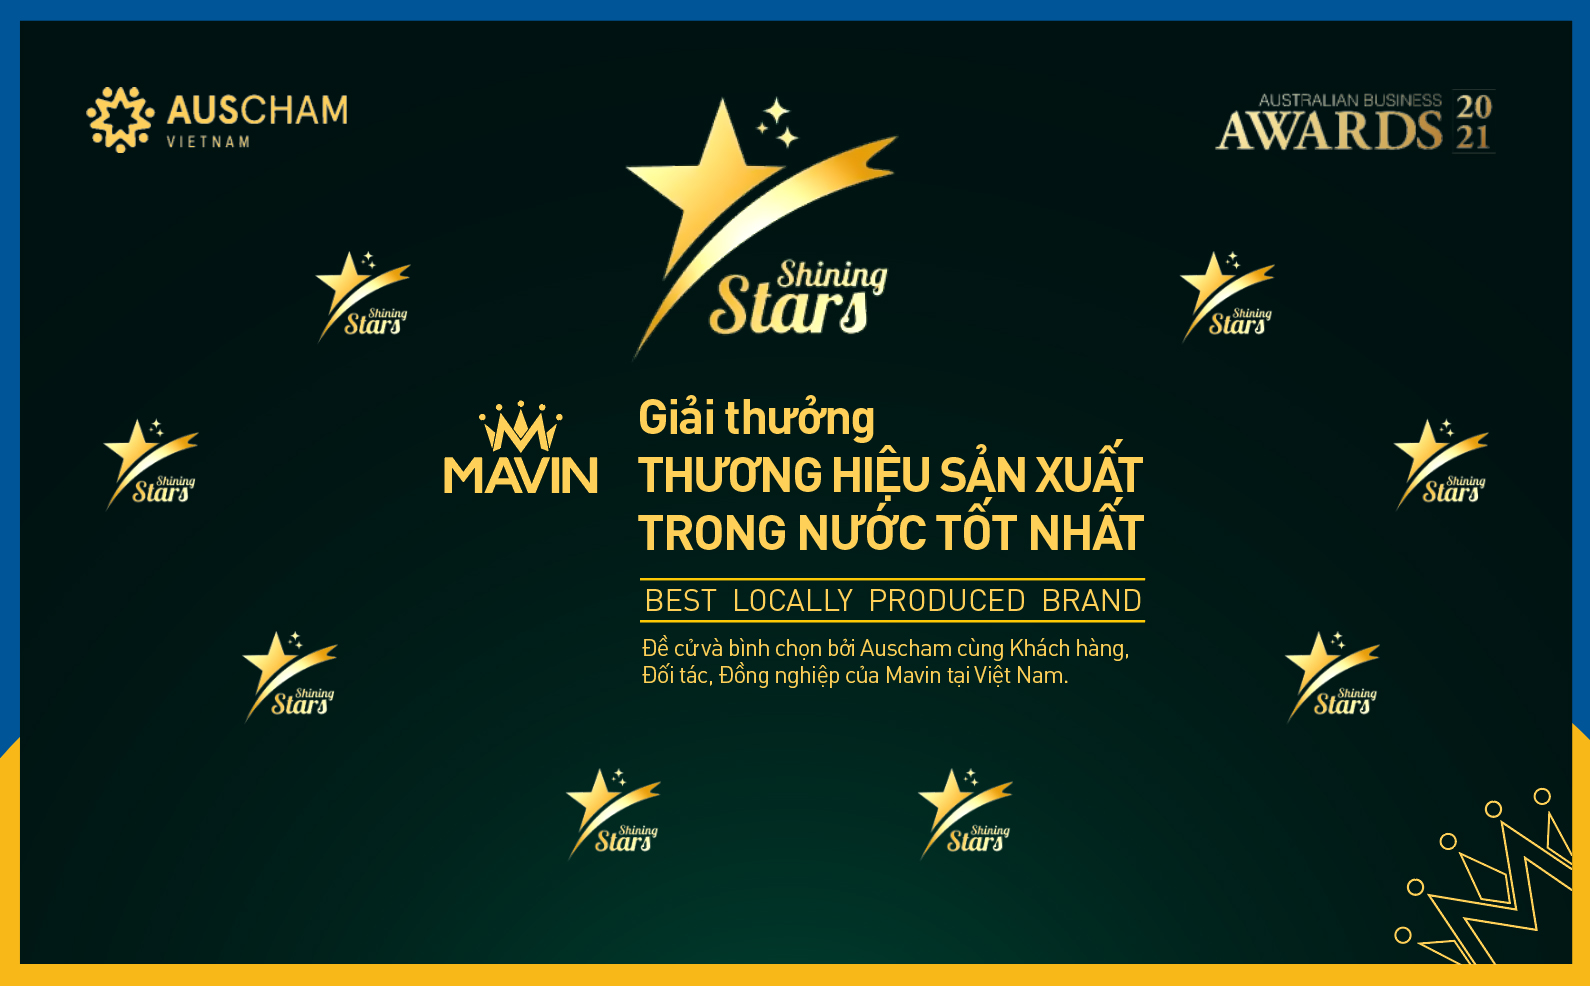 Mavin nhận giải “Thương hiệu sản xuất trong nước tốt nhất” từ Auscham VN - Ảnh 1.